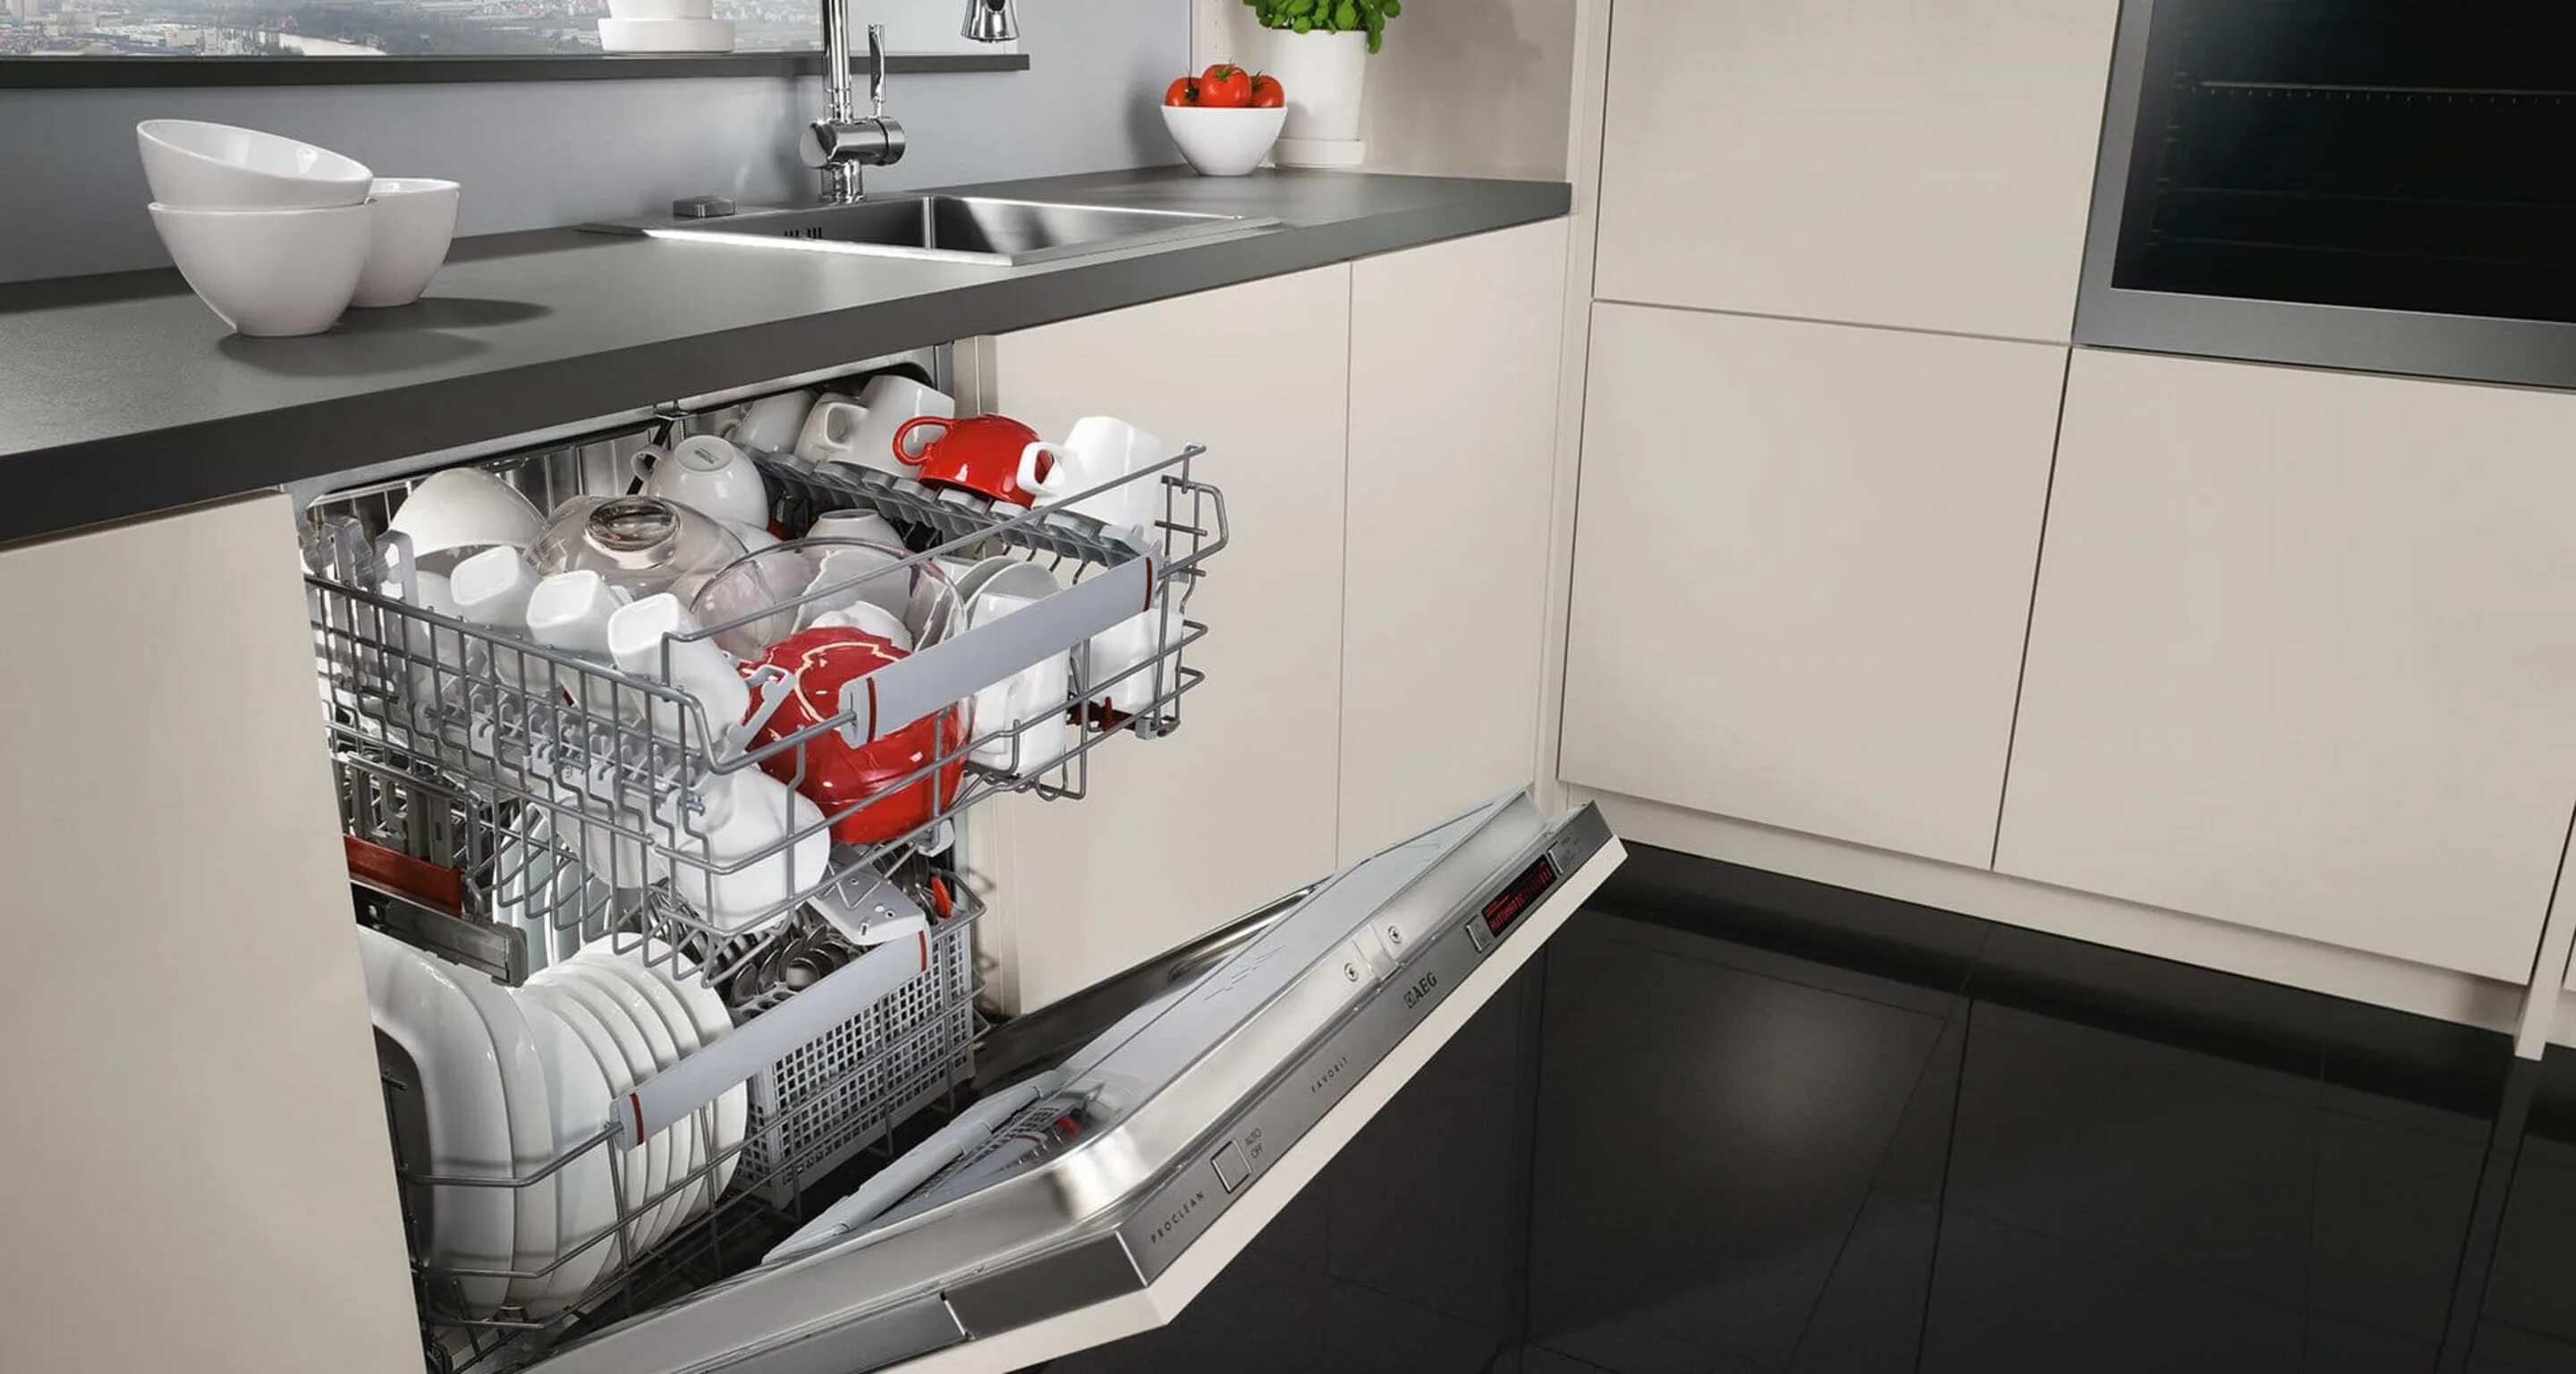 ПММ 450 встраиваемая под фасад 600. Топ посудомоечных машин 60 см встраиваемая 2020. Встроенная компактная ПММ 600. Посудомойка 45 см встраиваемая. Посудомойка останавливается